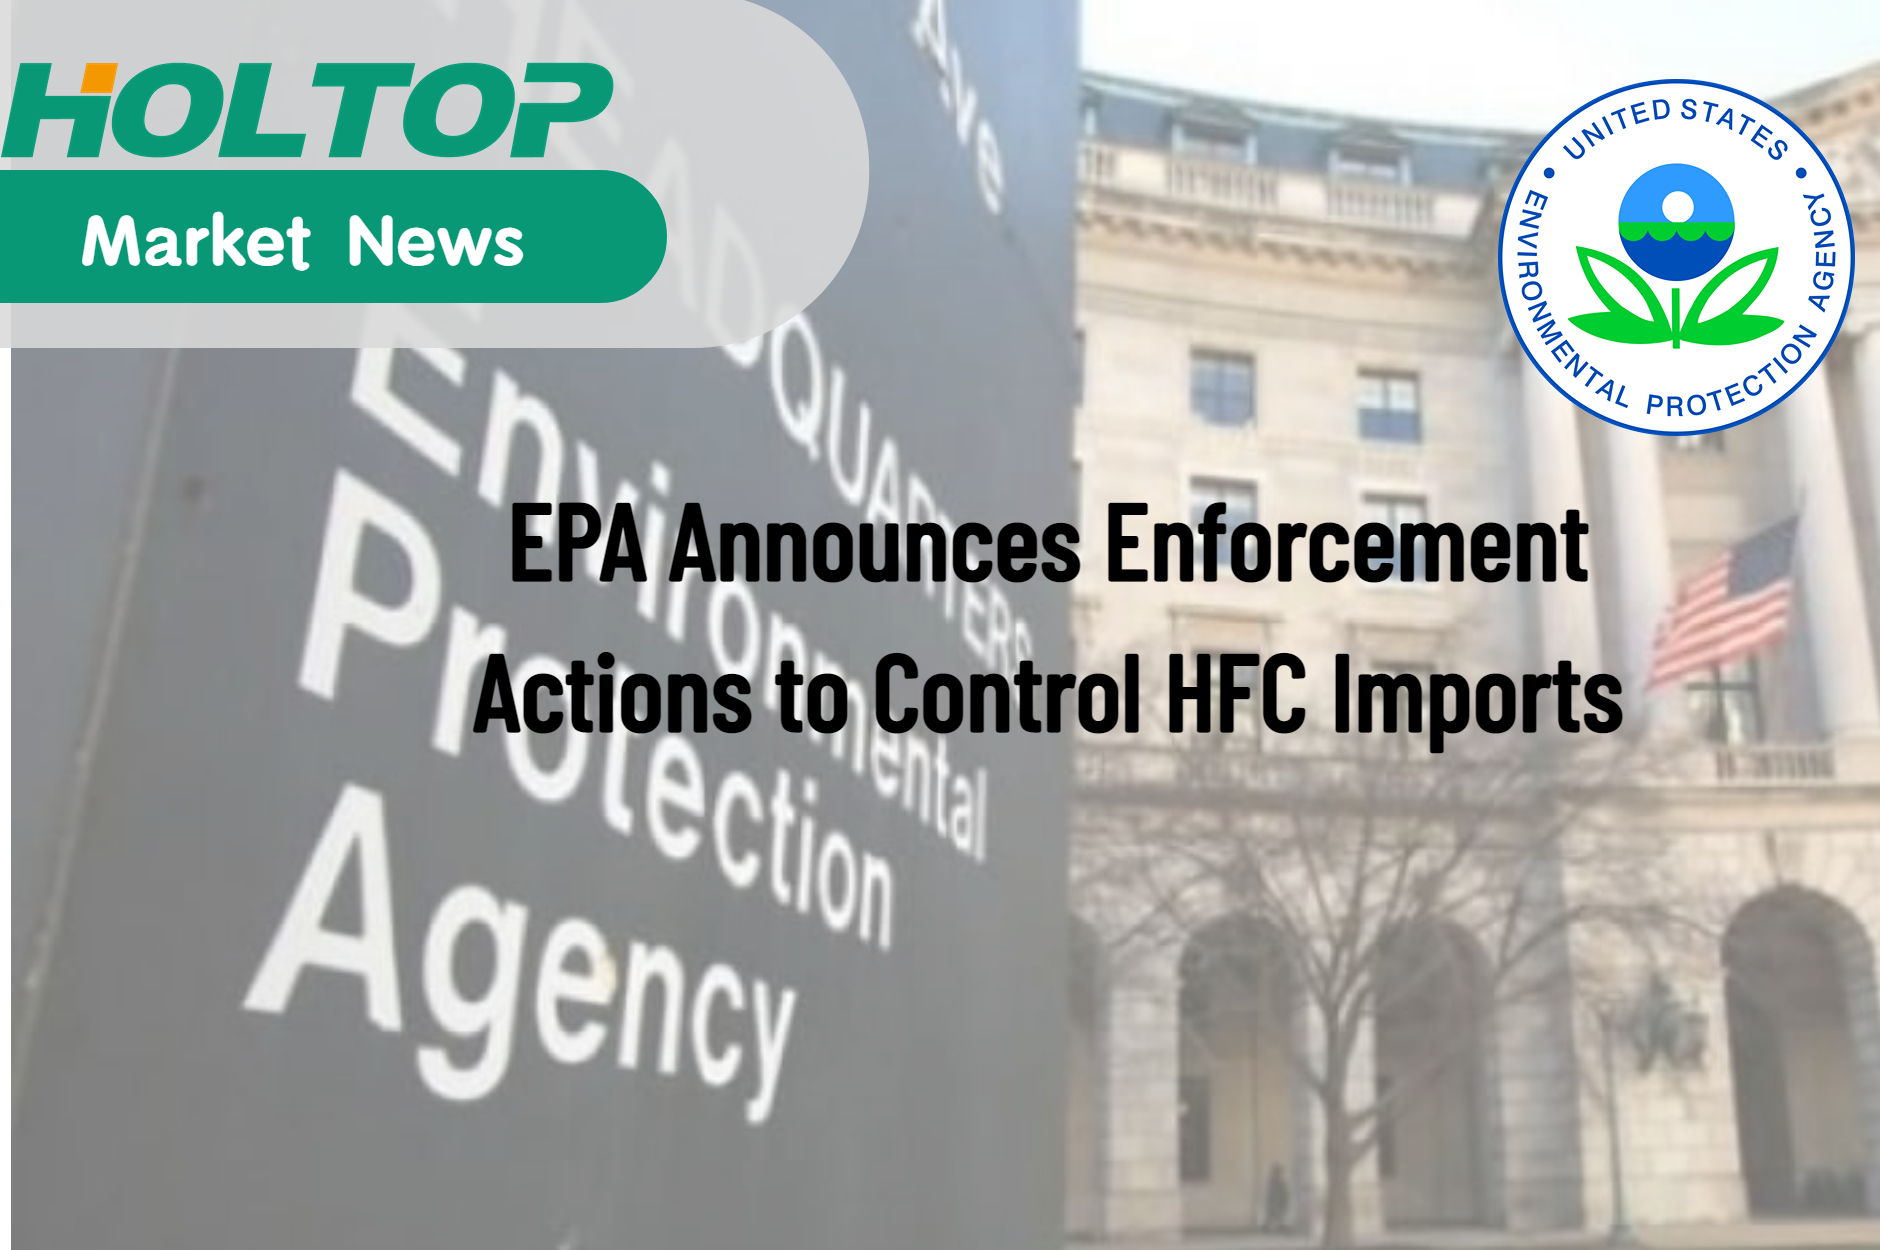 تعلن وكالة حماية البيئة عن إجراءات الإنفاذ للتحكم في واردات مركبات الكربون الهيدروفلورية